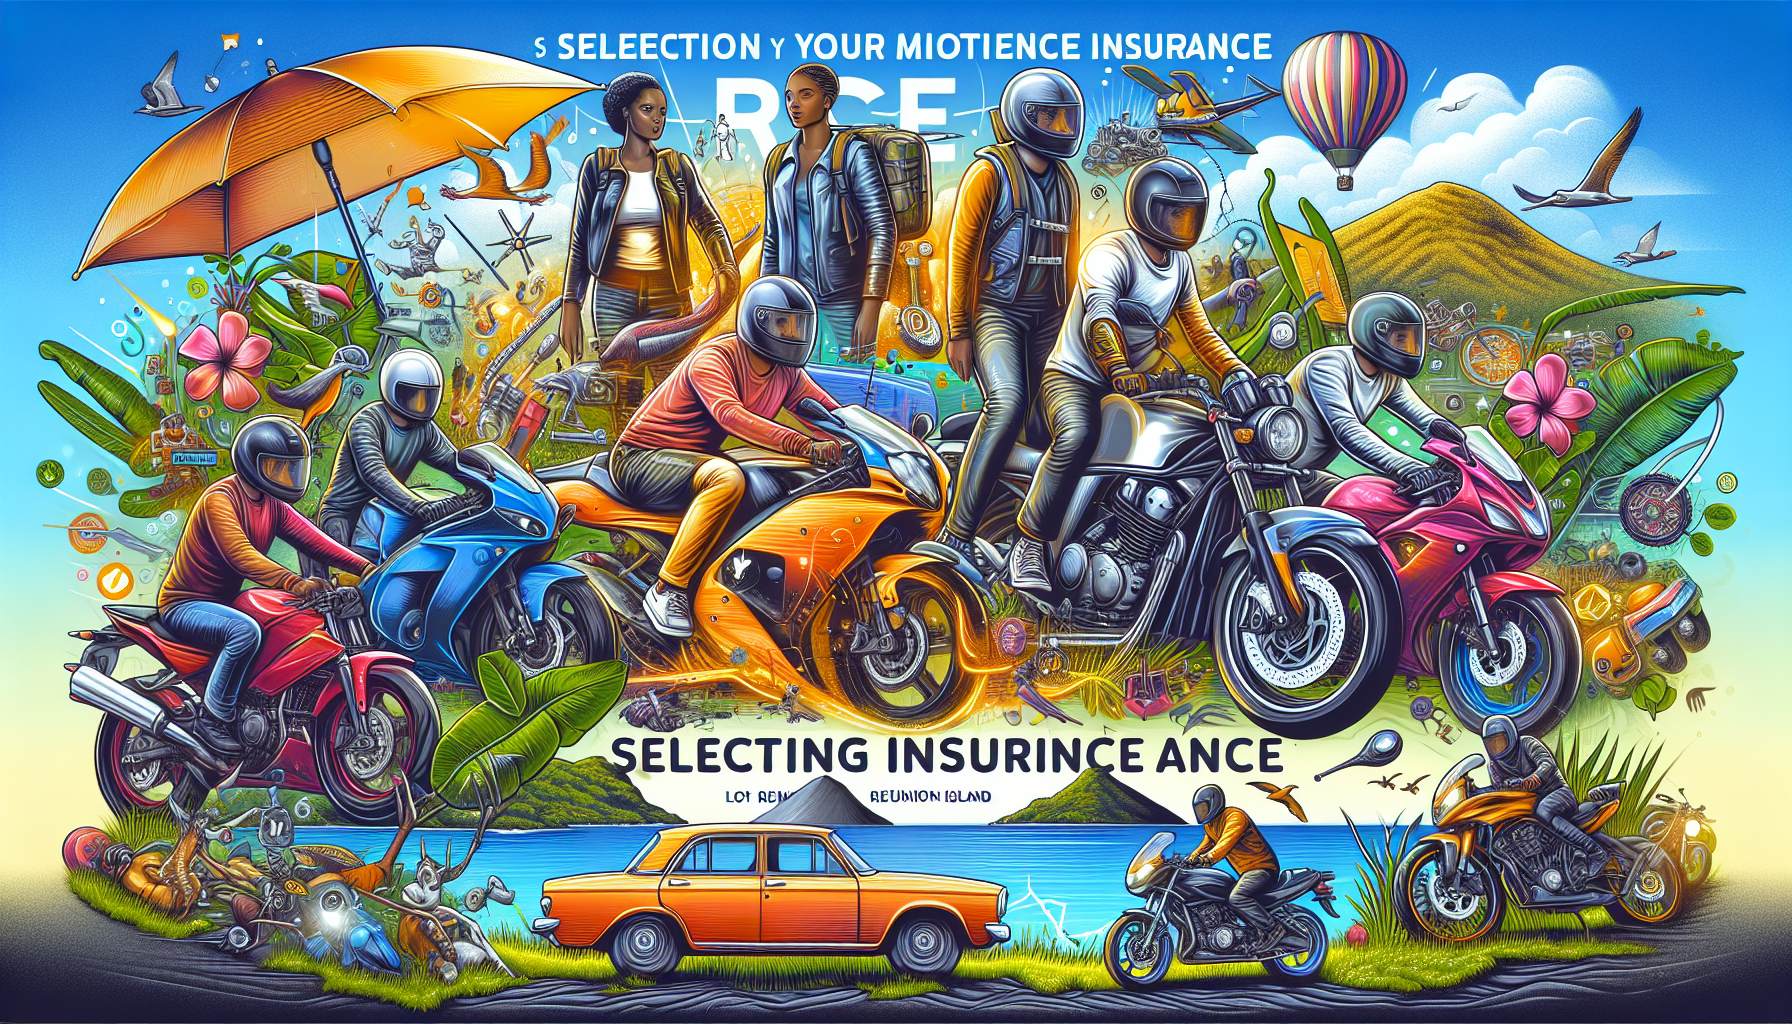 découvrez nos conseils pour bien choisir votre assurance moto à la réunion. trouvez la meilleure assurance moto 974 pour protéger votre véhicule et votre sécurité.